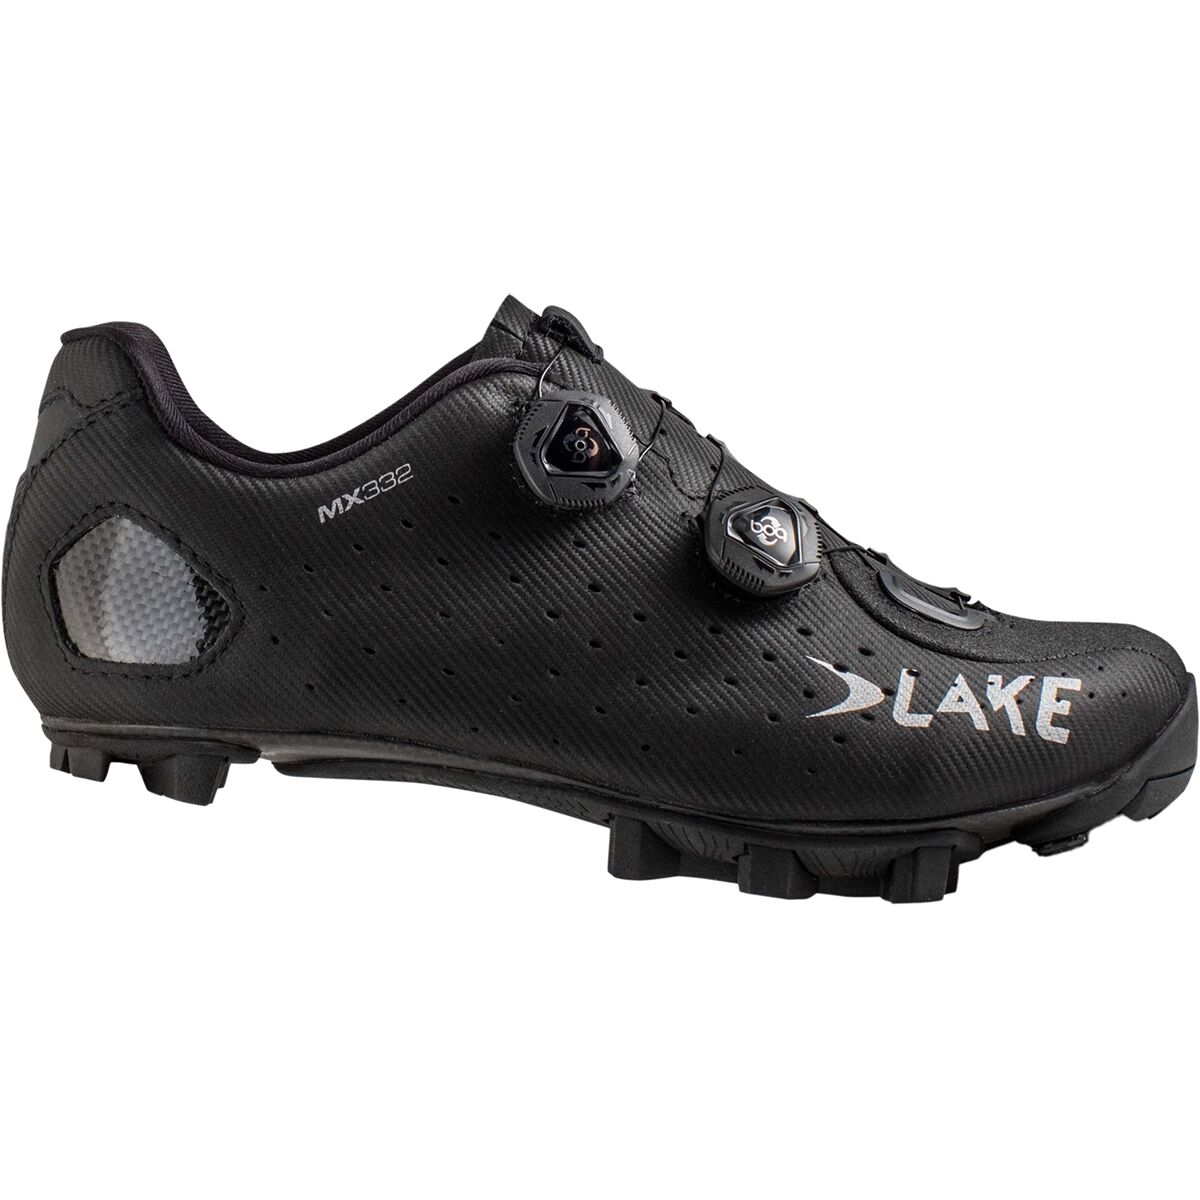 Lake MX332 Mountain Bike Shoe - Men's